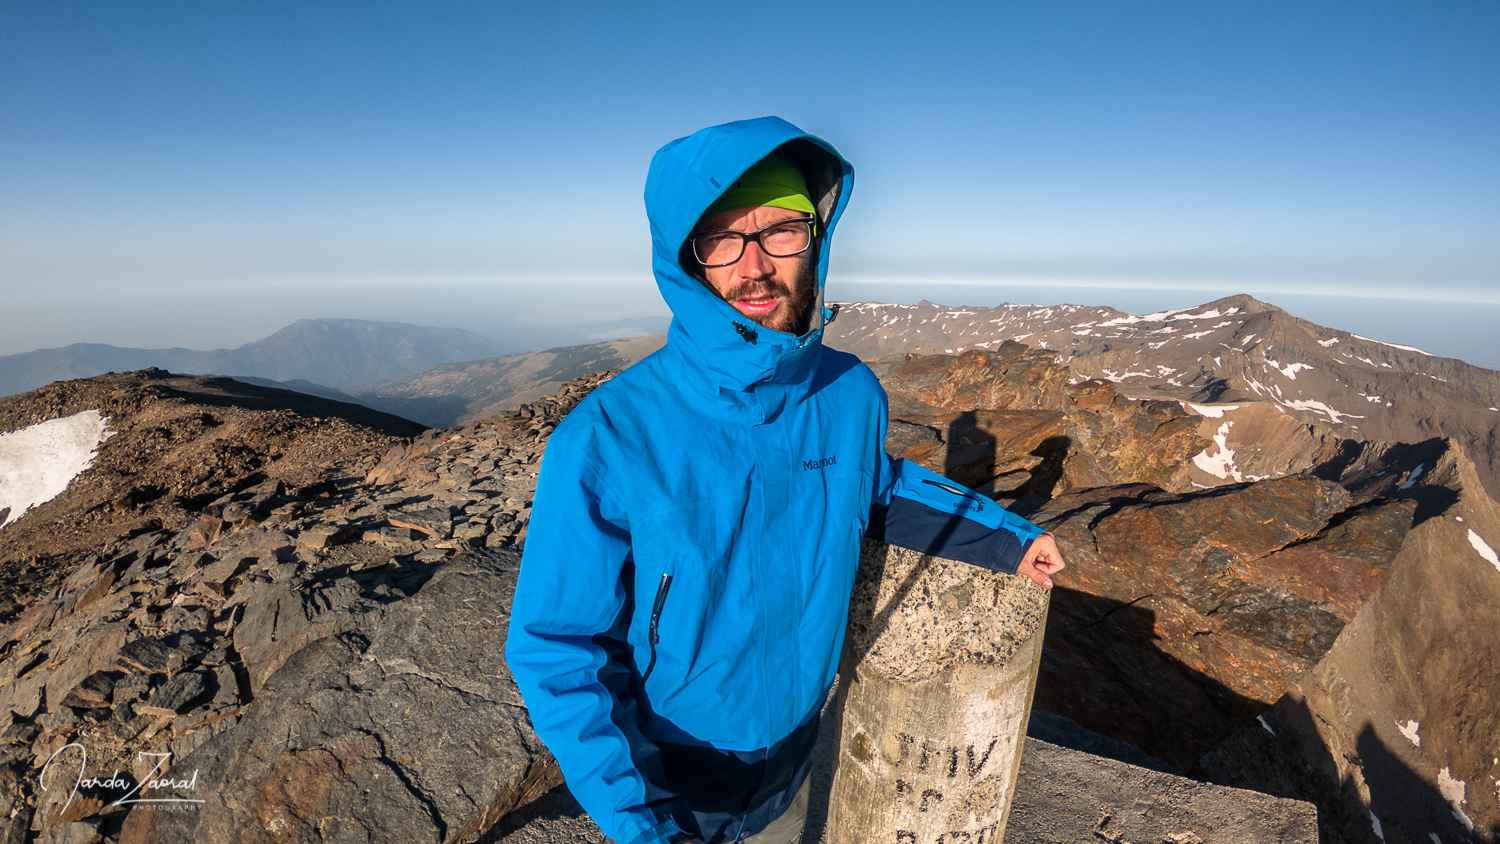 Frozen climber taking a selfie at Mulhacén mountain